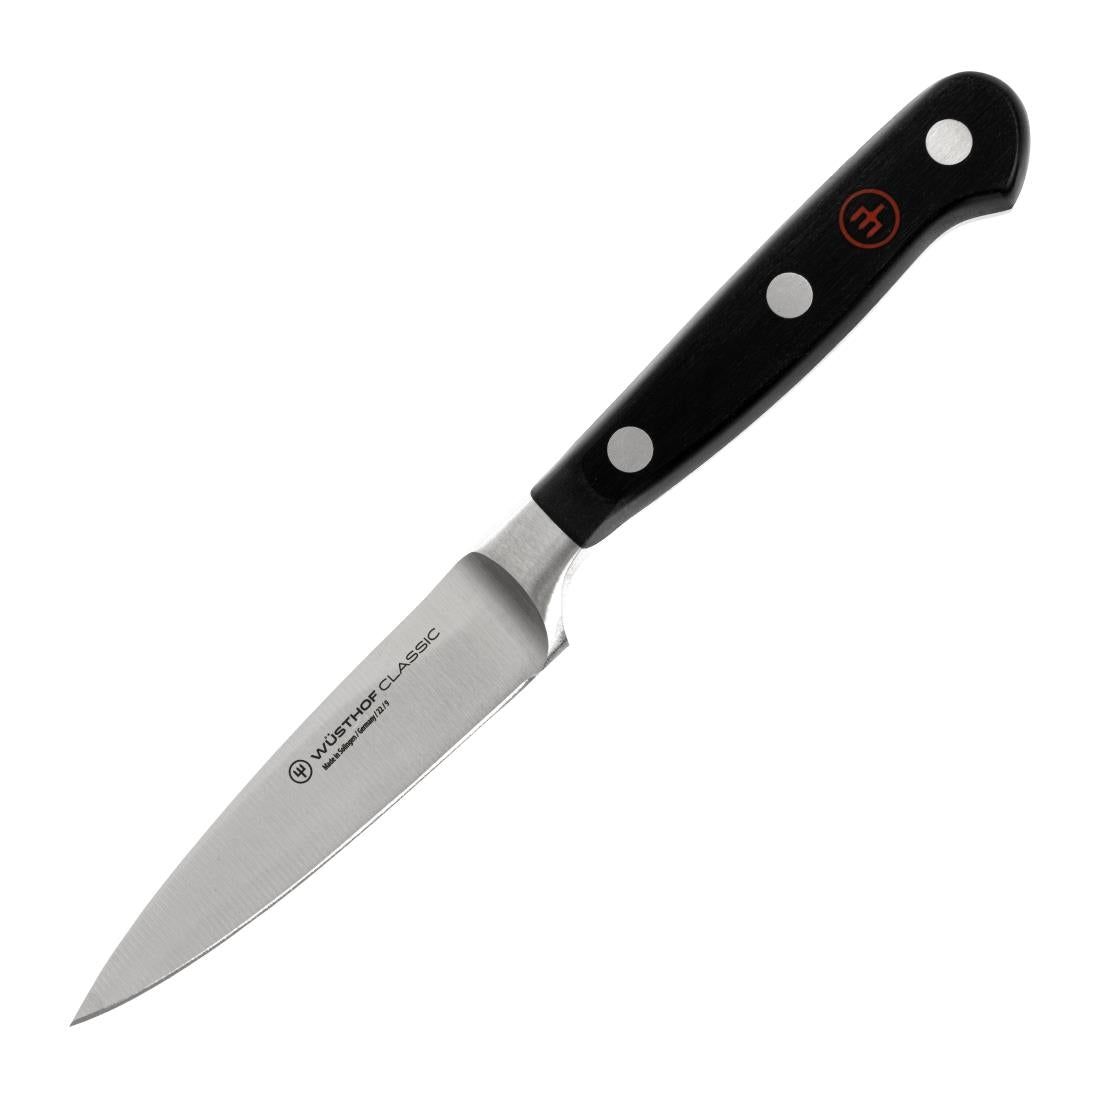 Wusthof Paring Knife 9cm